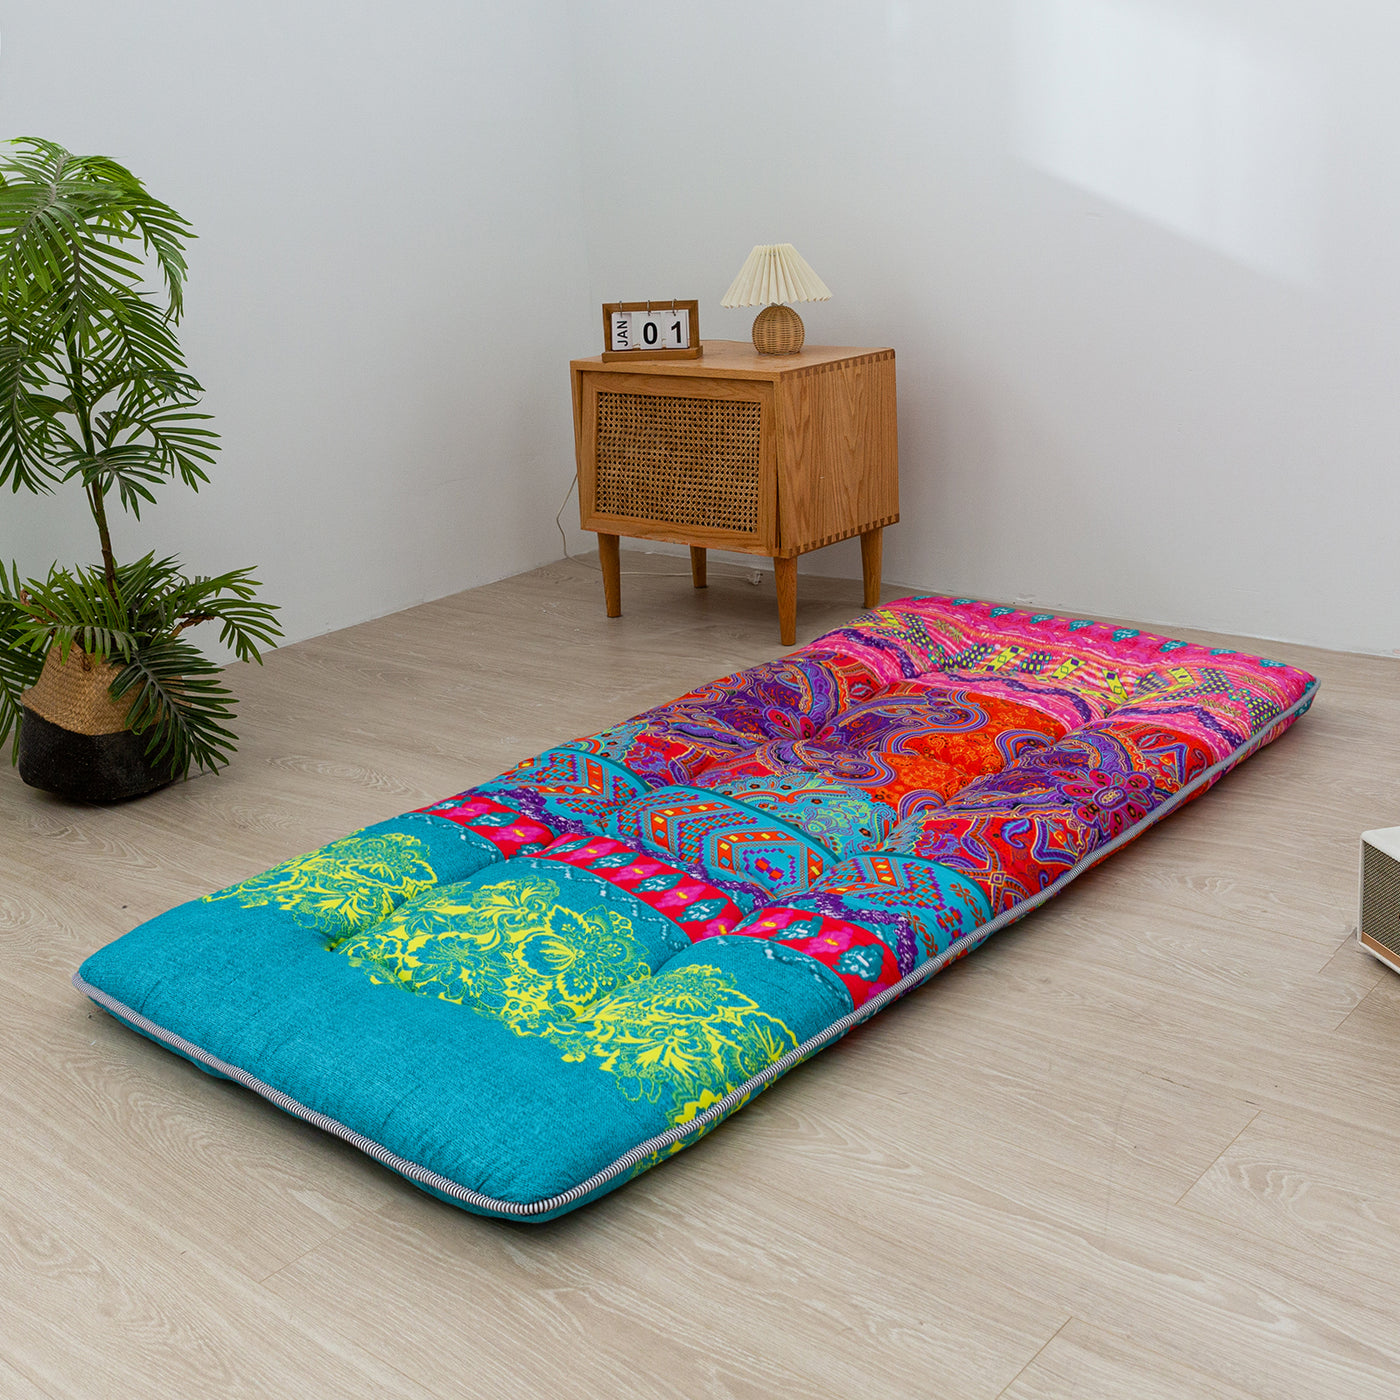 floor mattress#color_bohemia-b